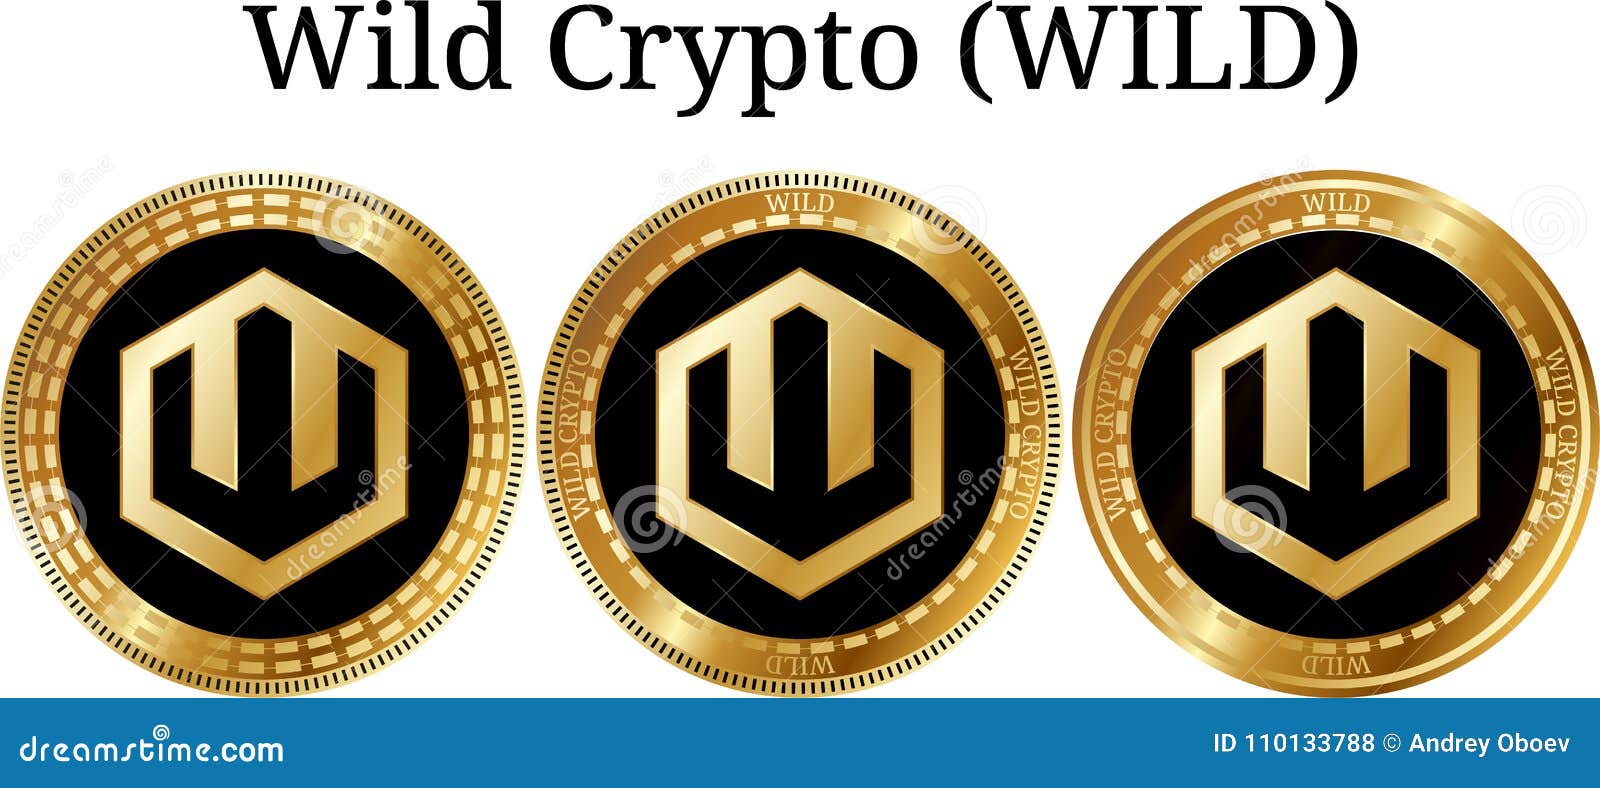 wild crypto ico